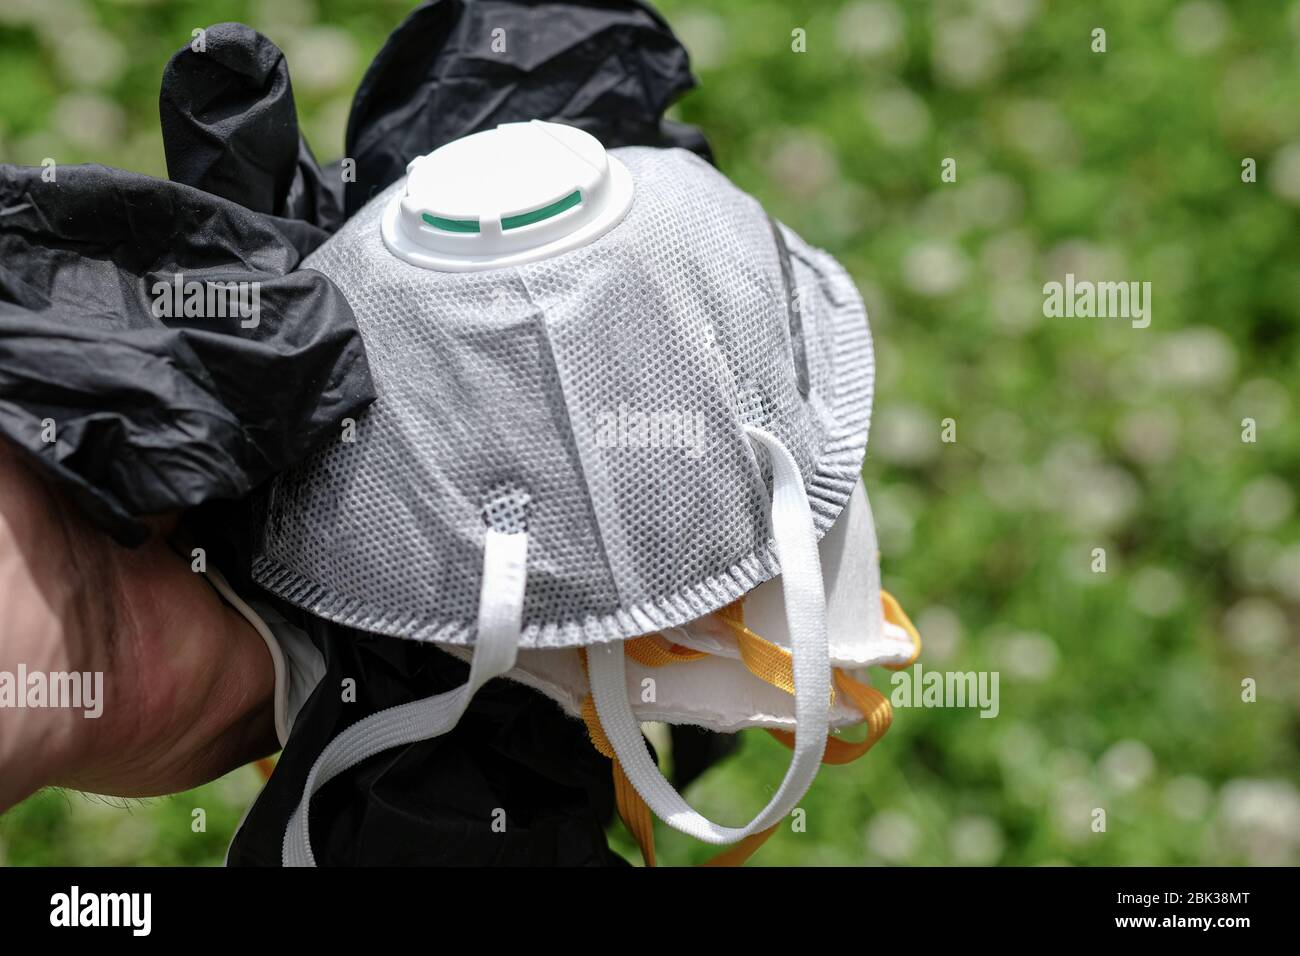 Uomo tenere maschera protettiva ffp2 e guanti rifiuti rifiuti rifiuti rifiuti di erba Ground.covid coronavirus malattia inquinamento da rifiuti Foto Stock